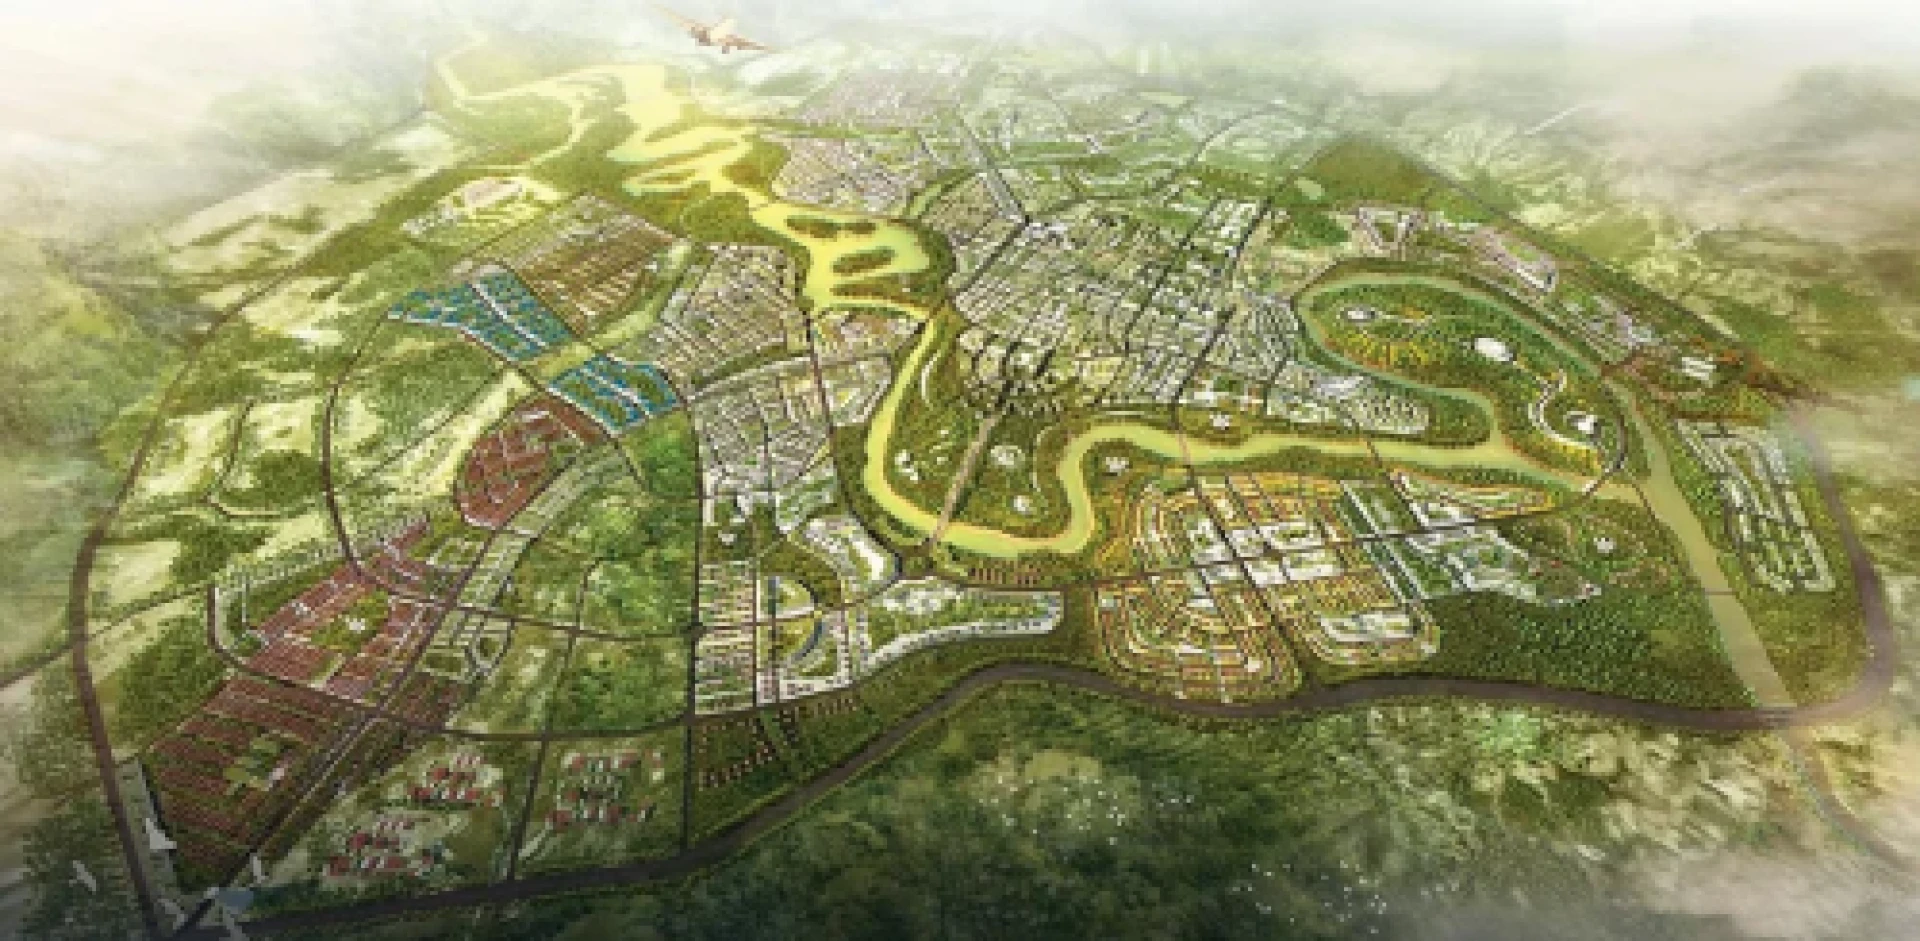 Quy hoạch thành phố Kon Tum 2030 -2050